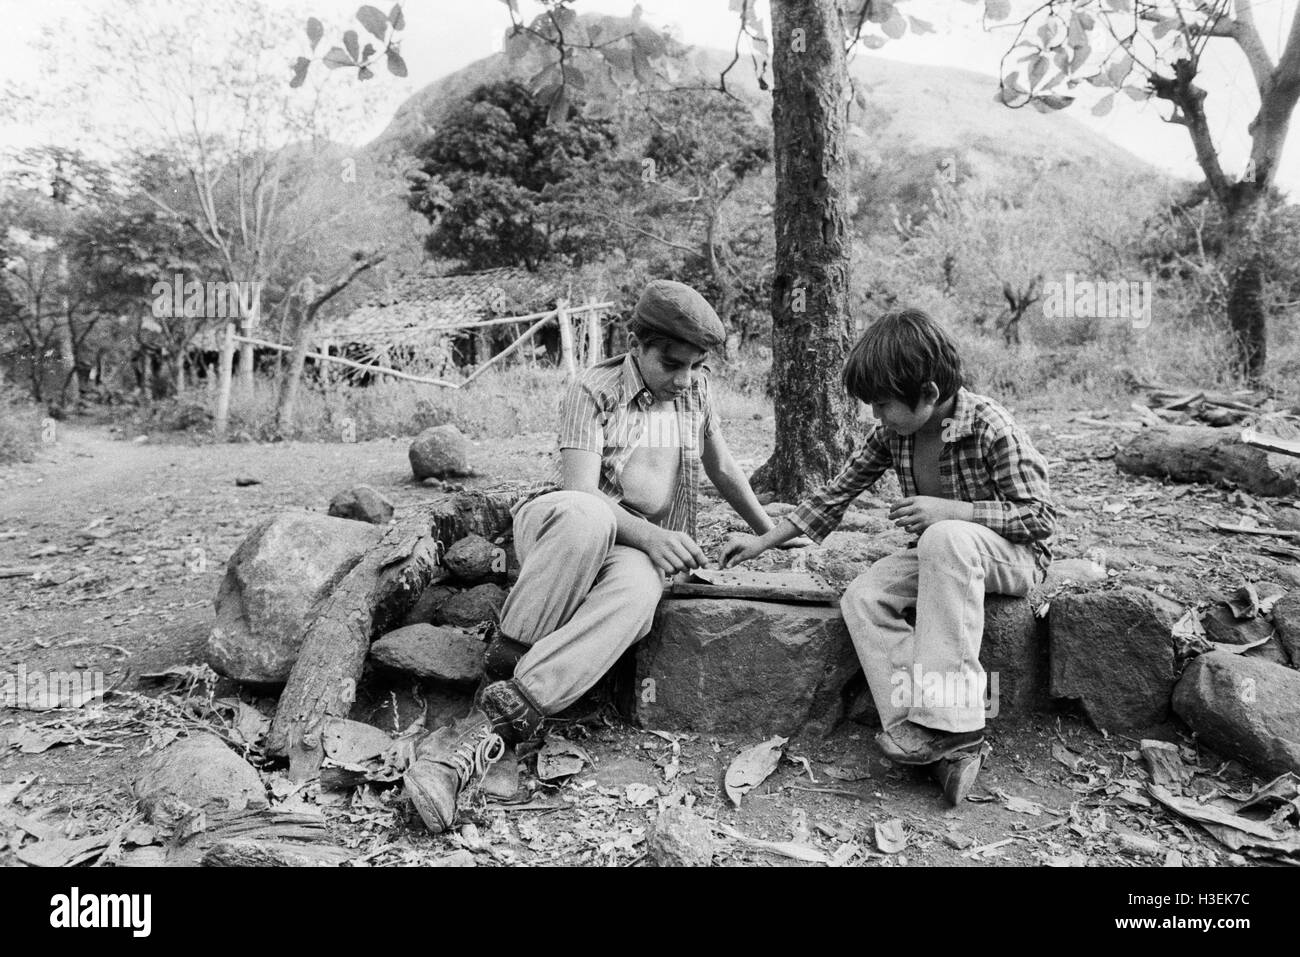 CHALATENANGO, EL SALVADOR, février 1984 : - dans le FPL Les zones de contrôle les garçons jouent un jeu de plateau. Photo de Mike Goldwater Banque D'Images